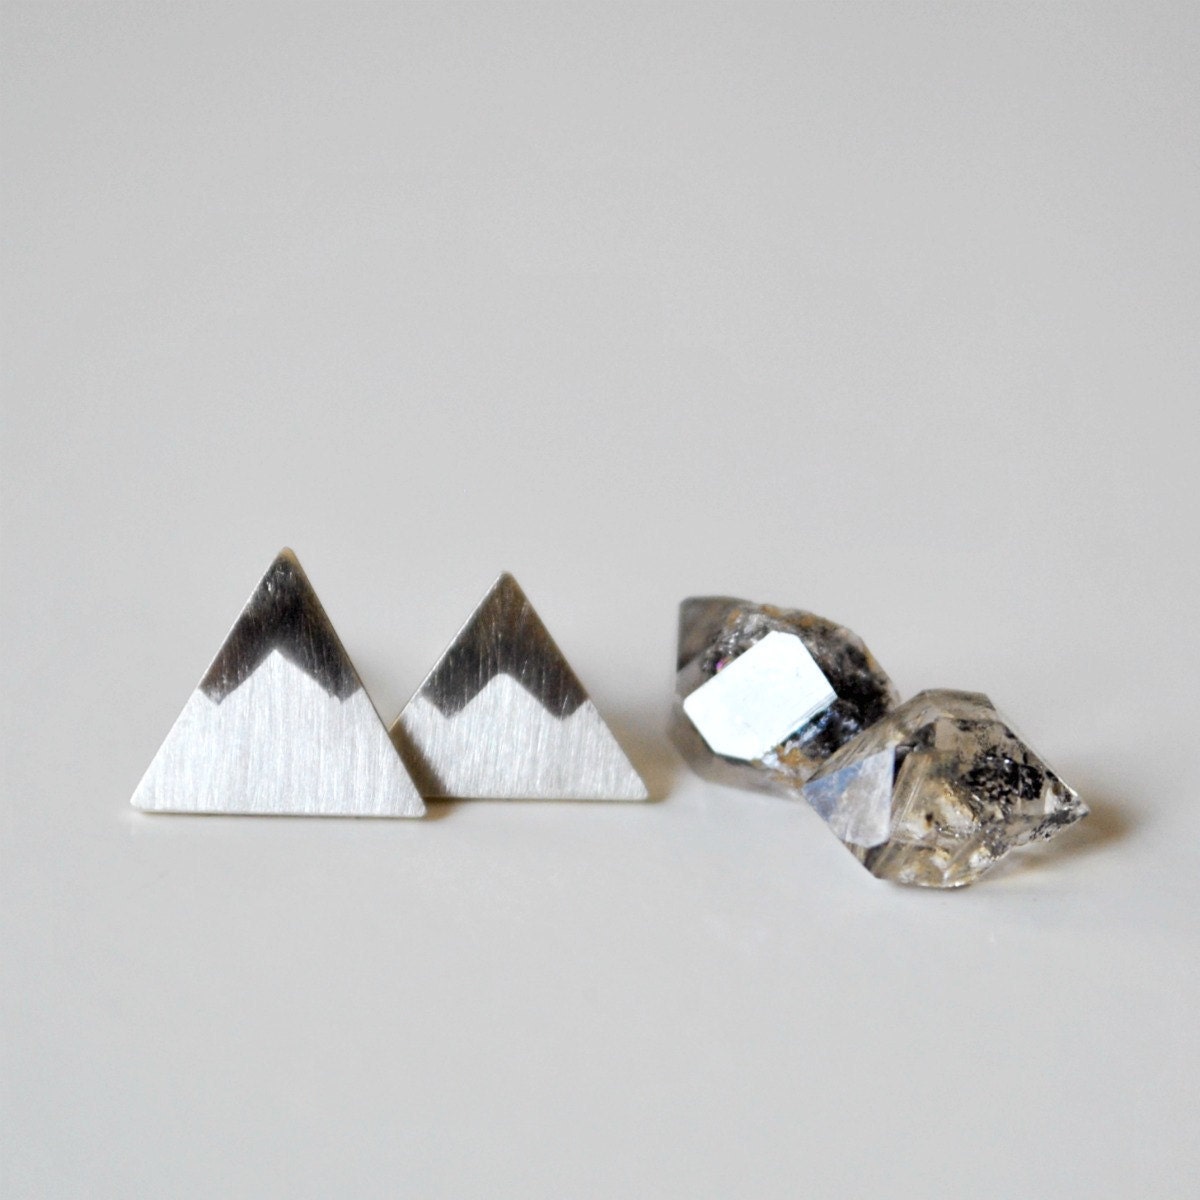 Peaks - Mountains Sterling Silver Stud Earrings - TheAngryWeather